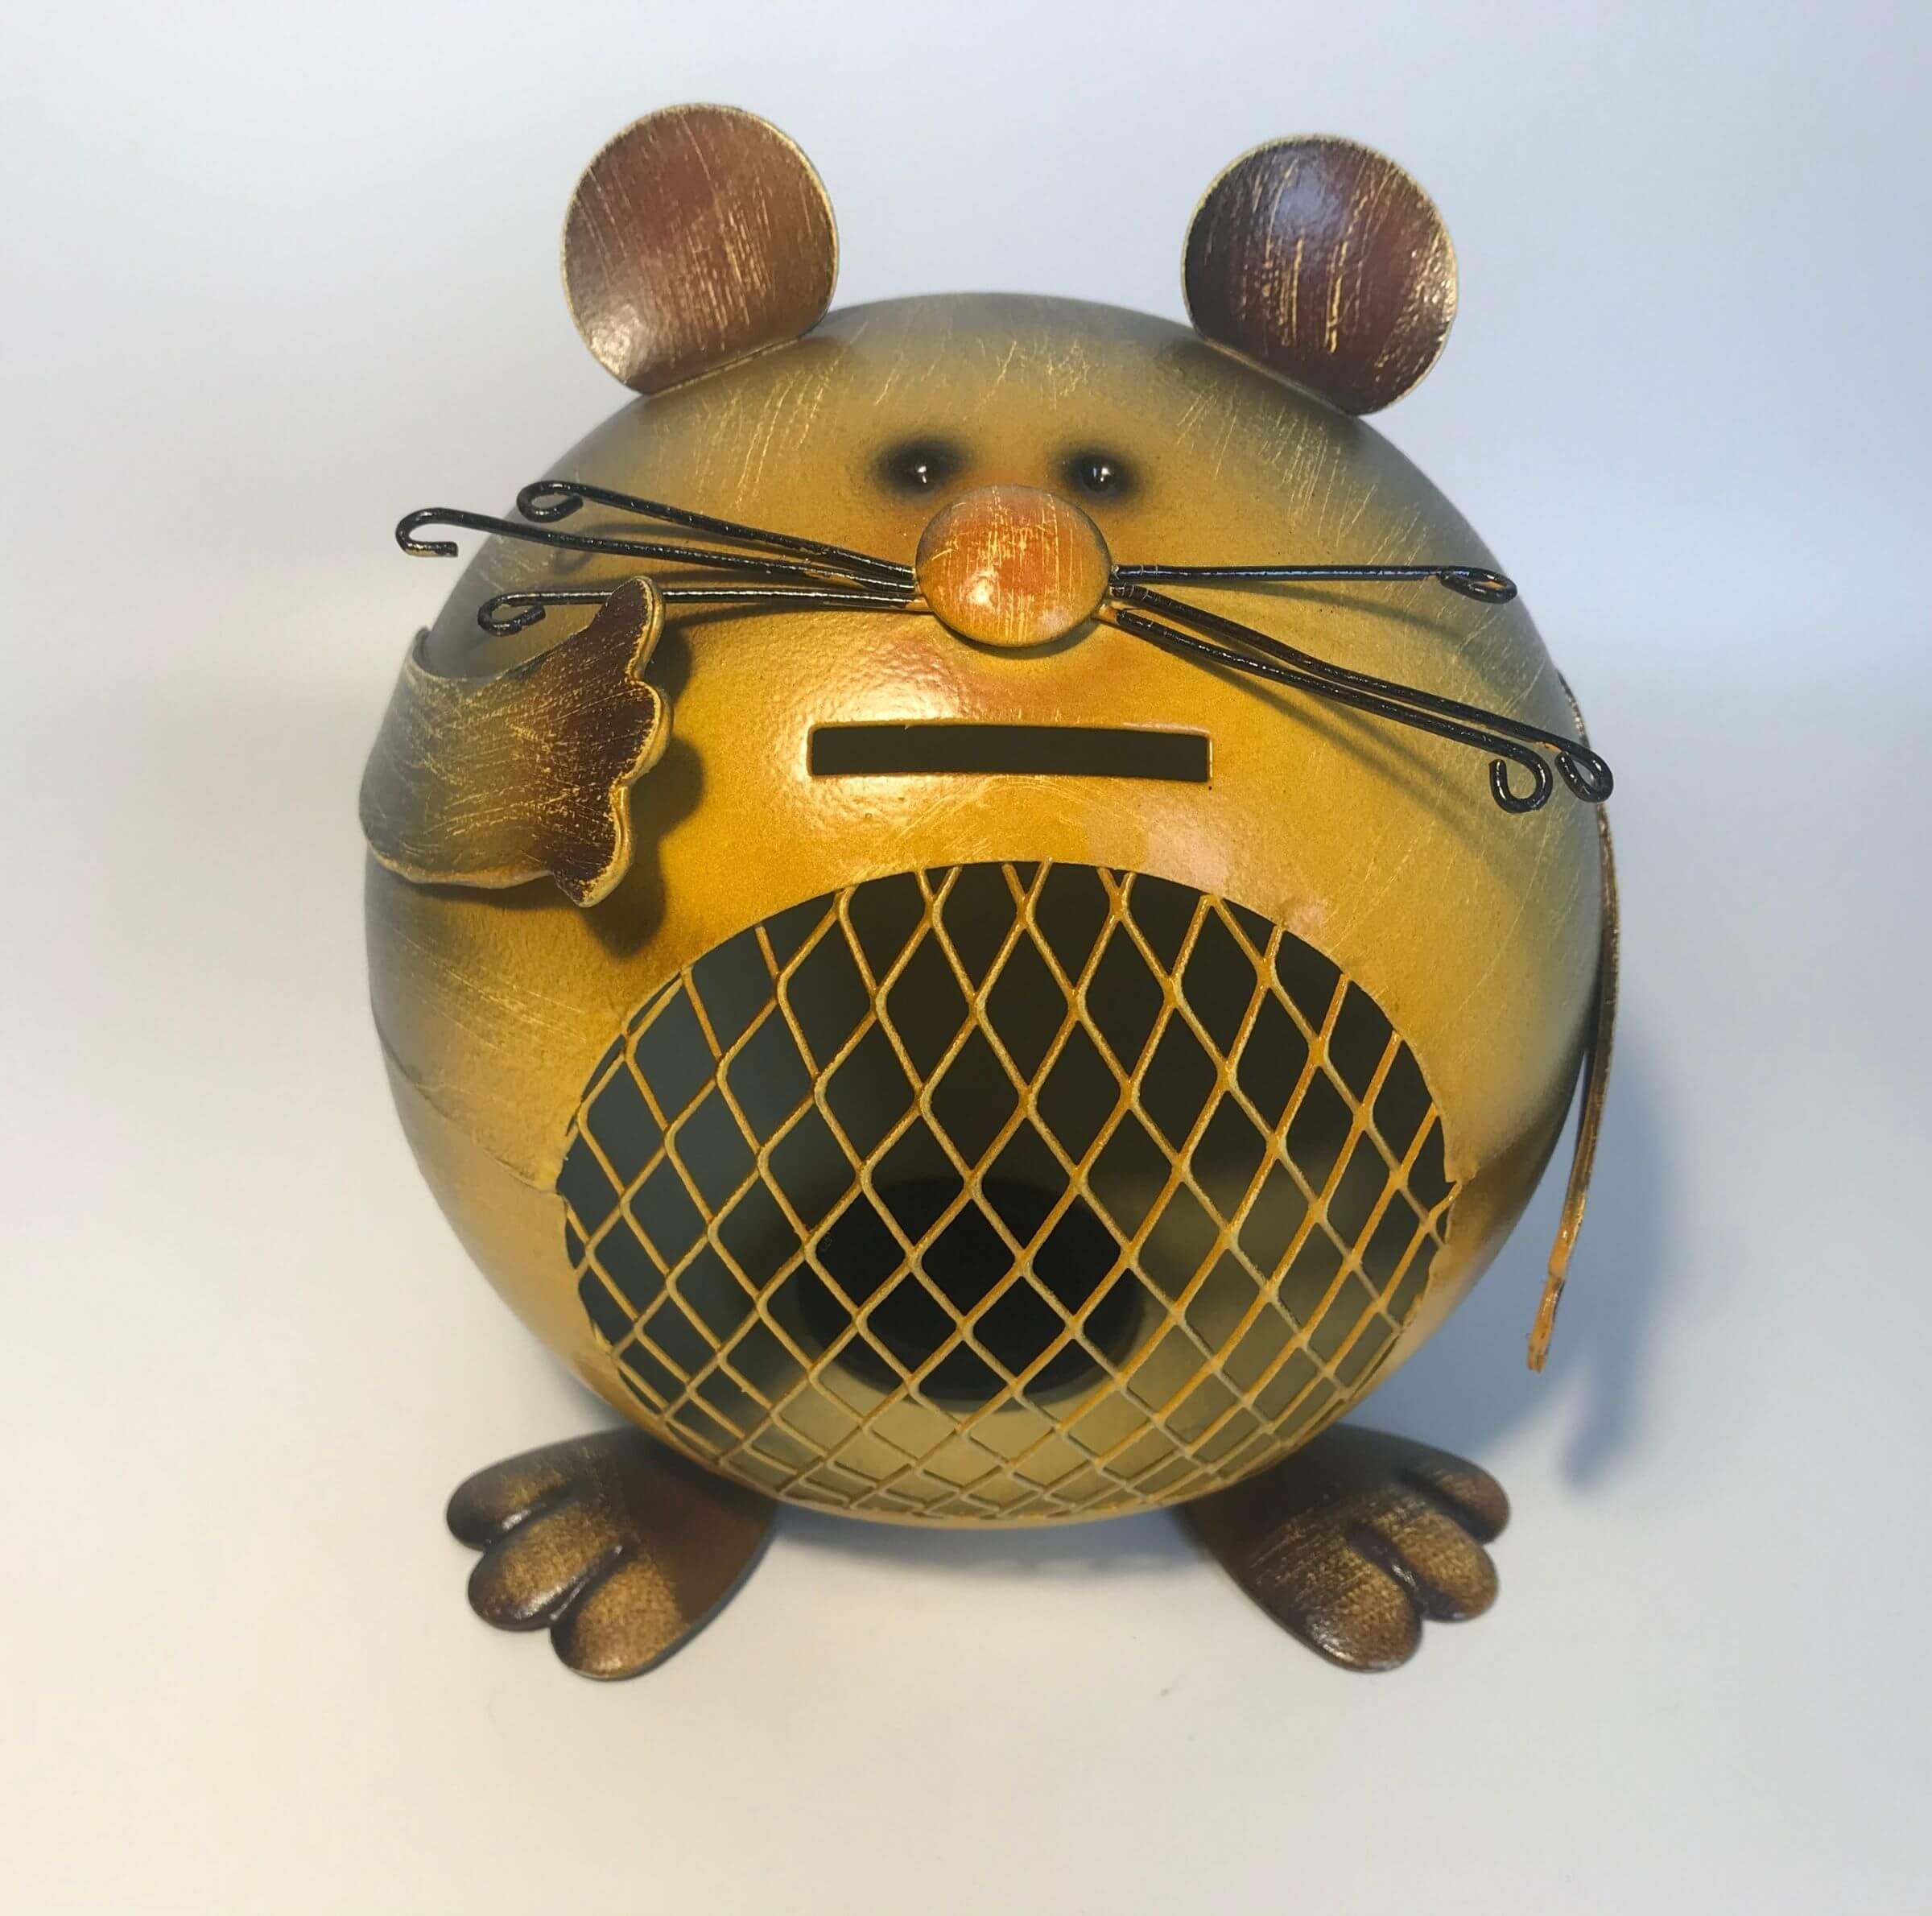 Tämä söpö hiiri säästöpossu on loistava lelu lapsille image